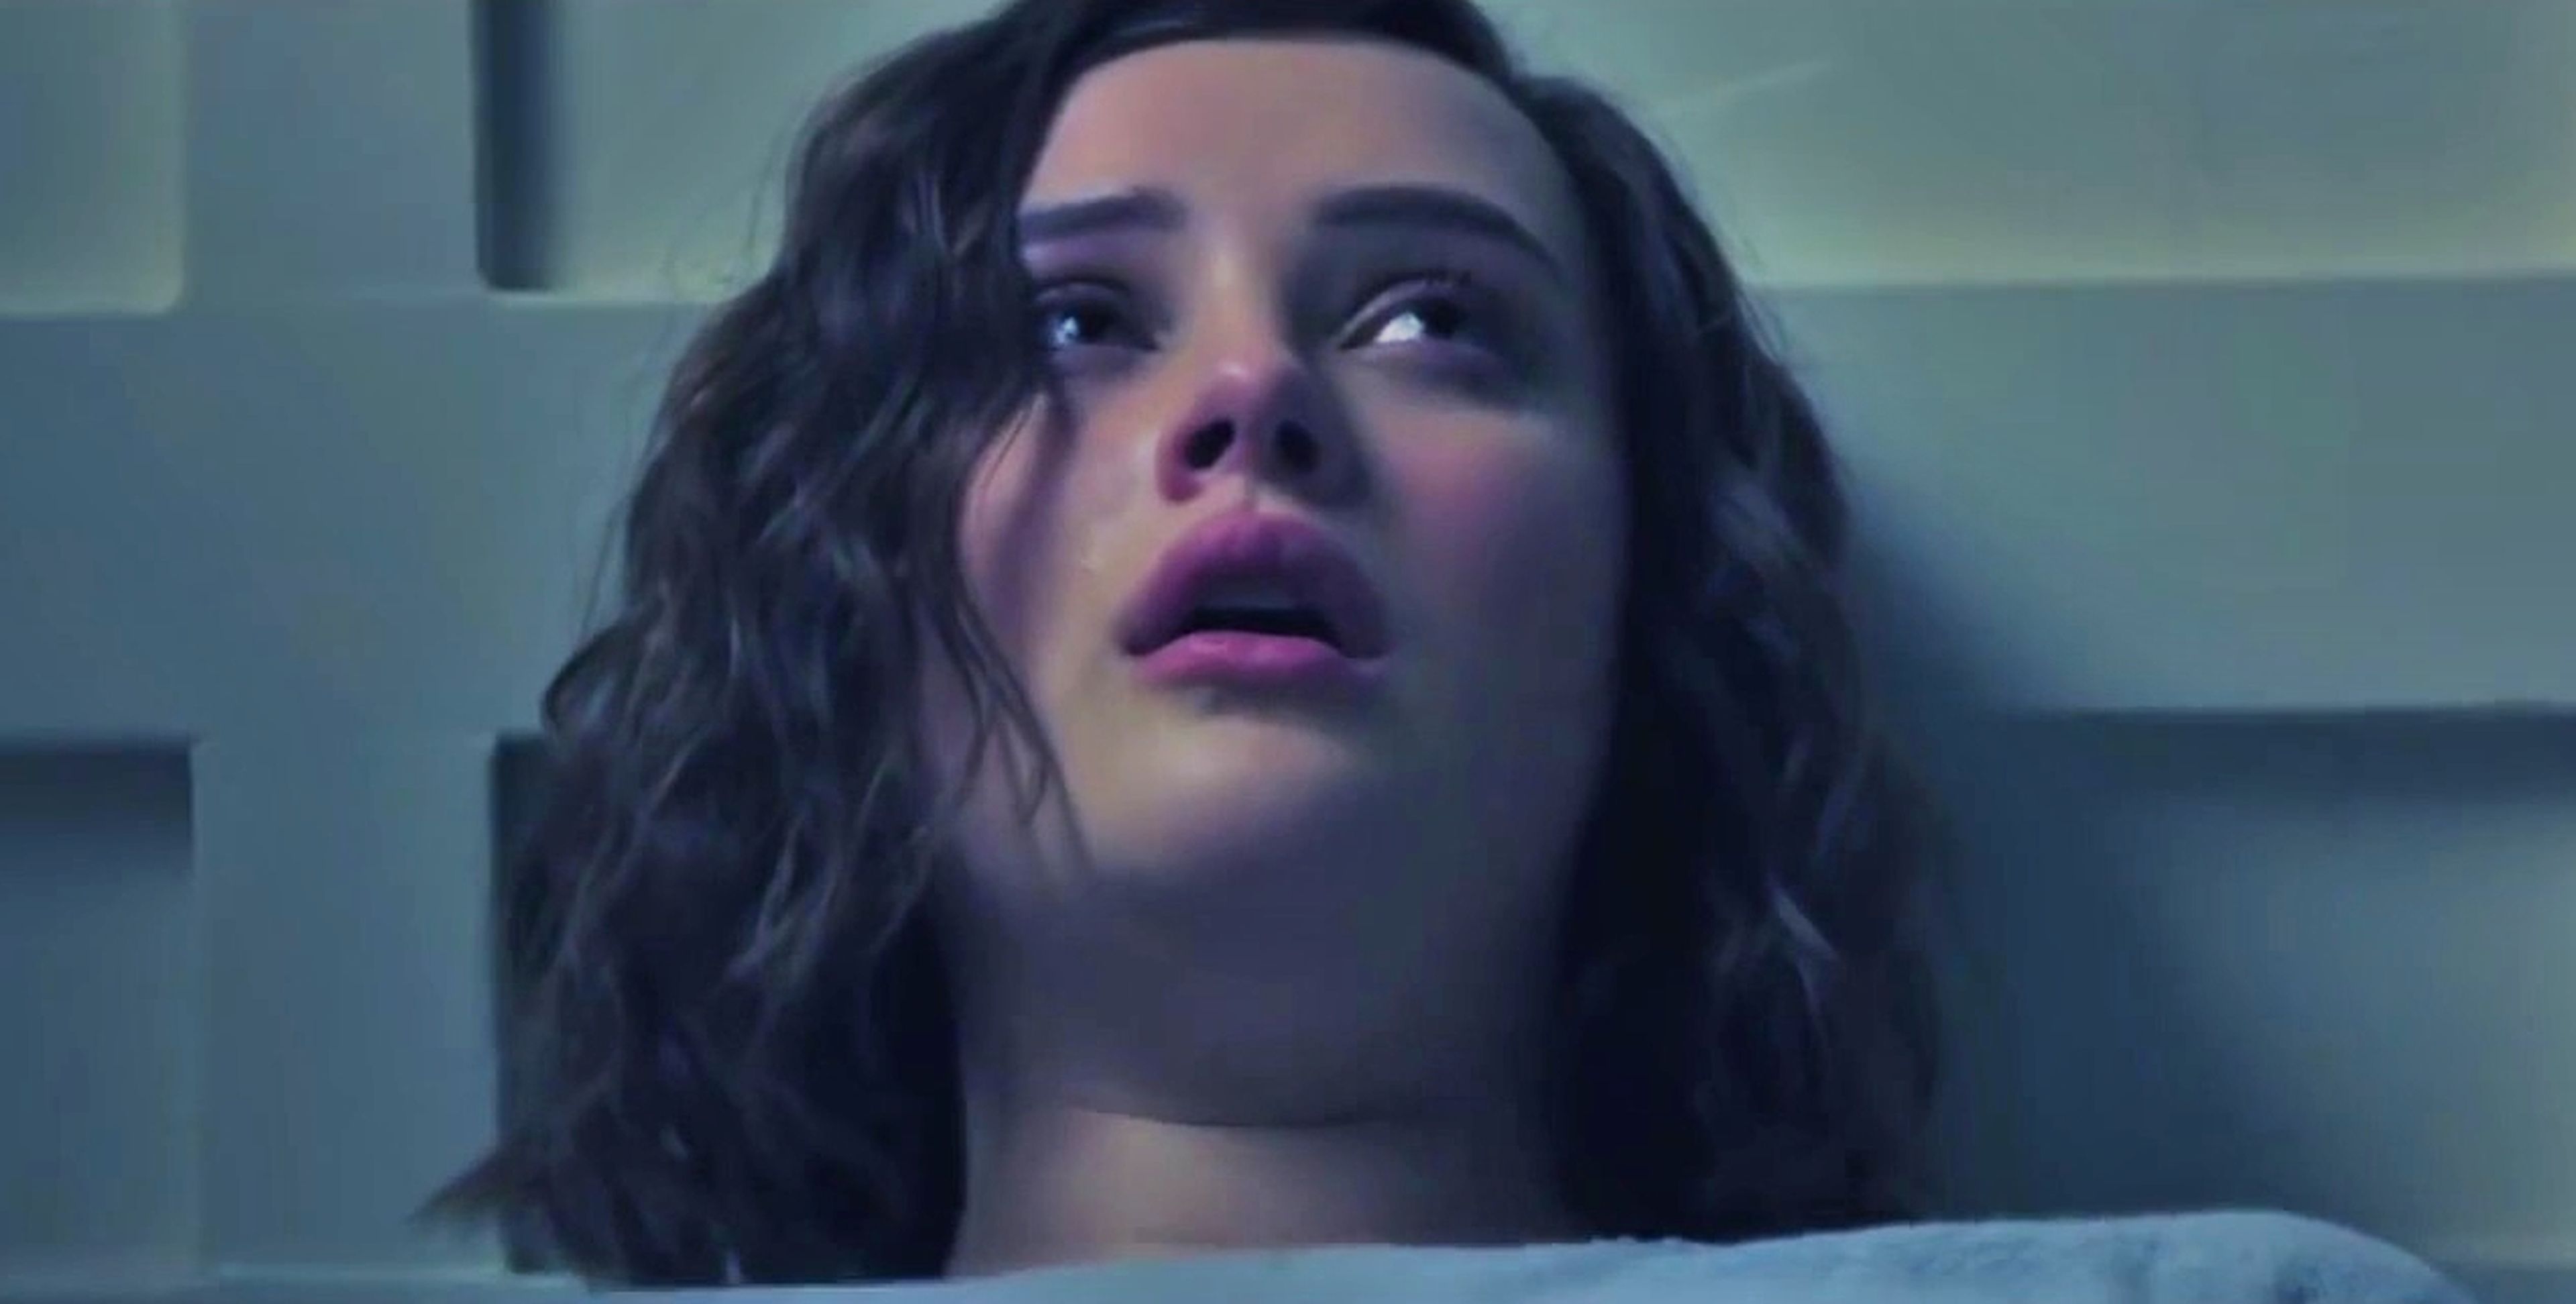 Por trece razones - Netflix retira la explícita escena del suicidio de Hannah